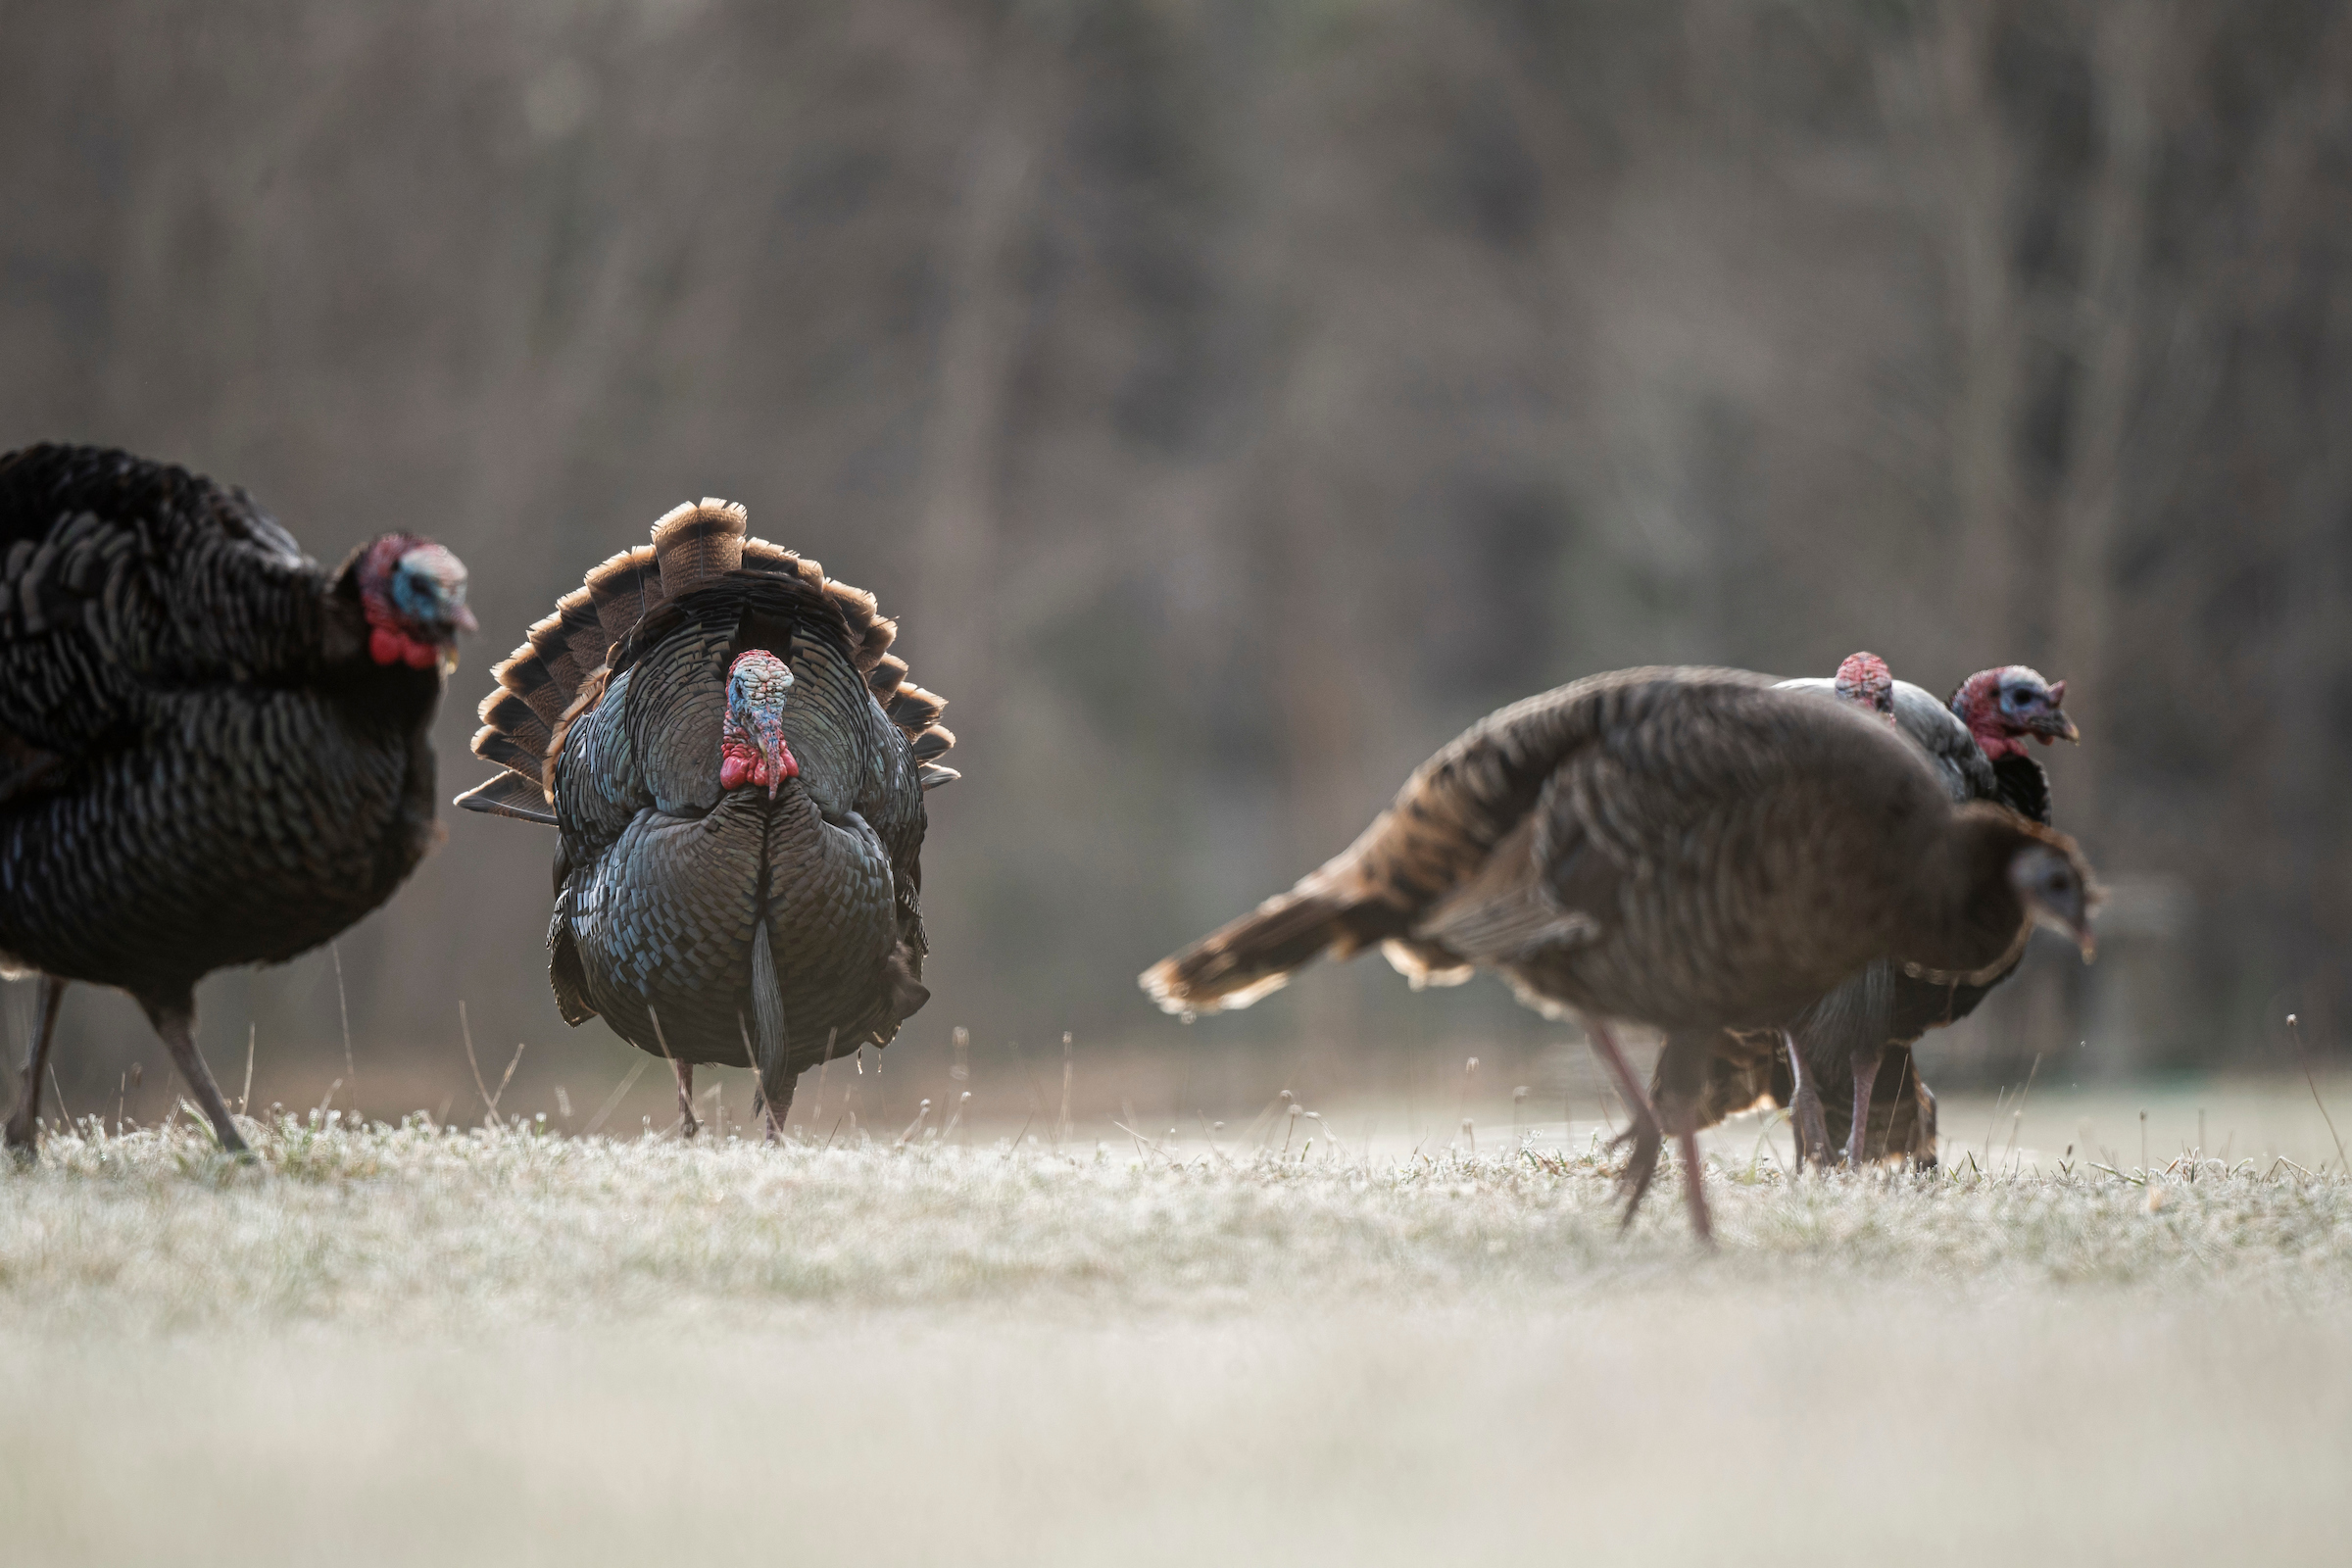 Reaping turkeys won't help populations rebound.